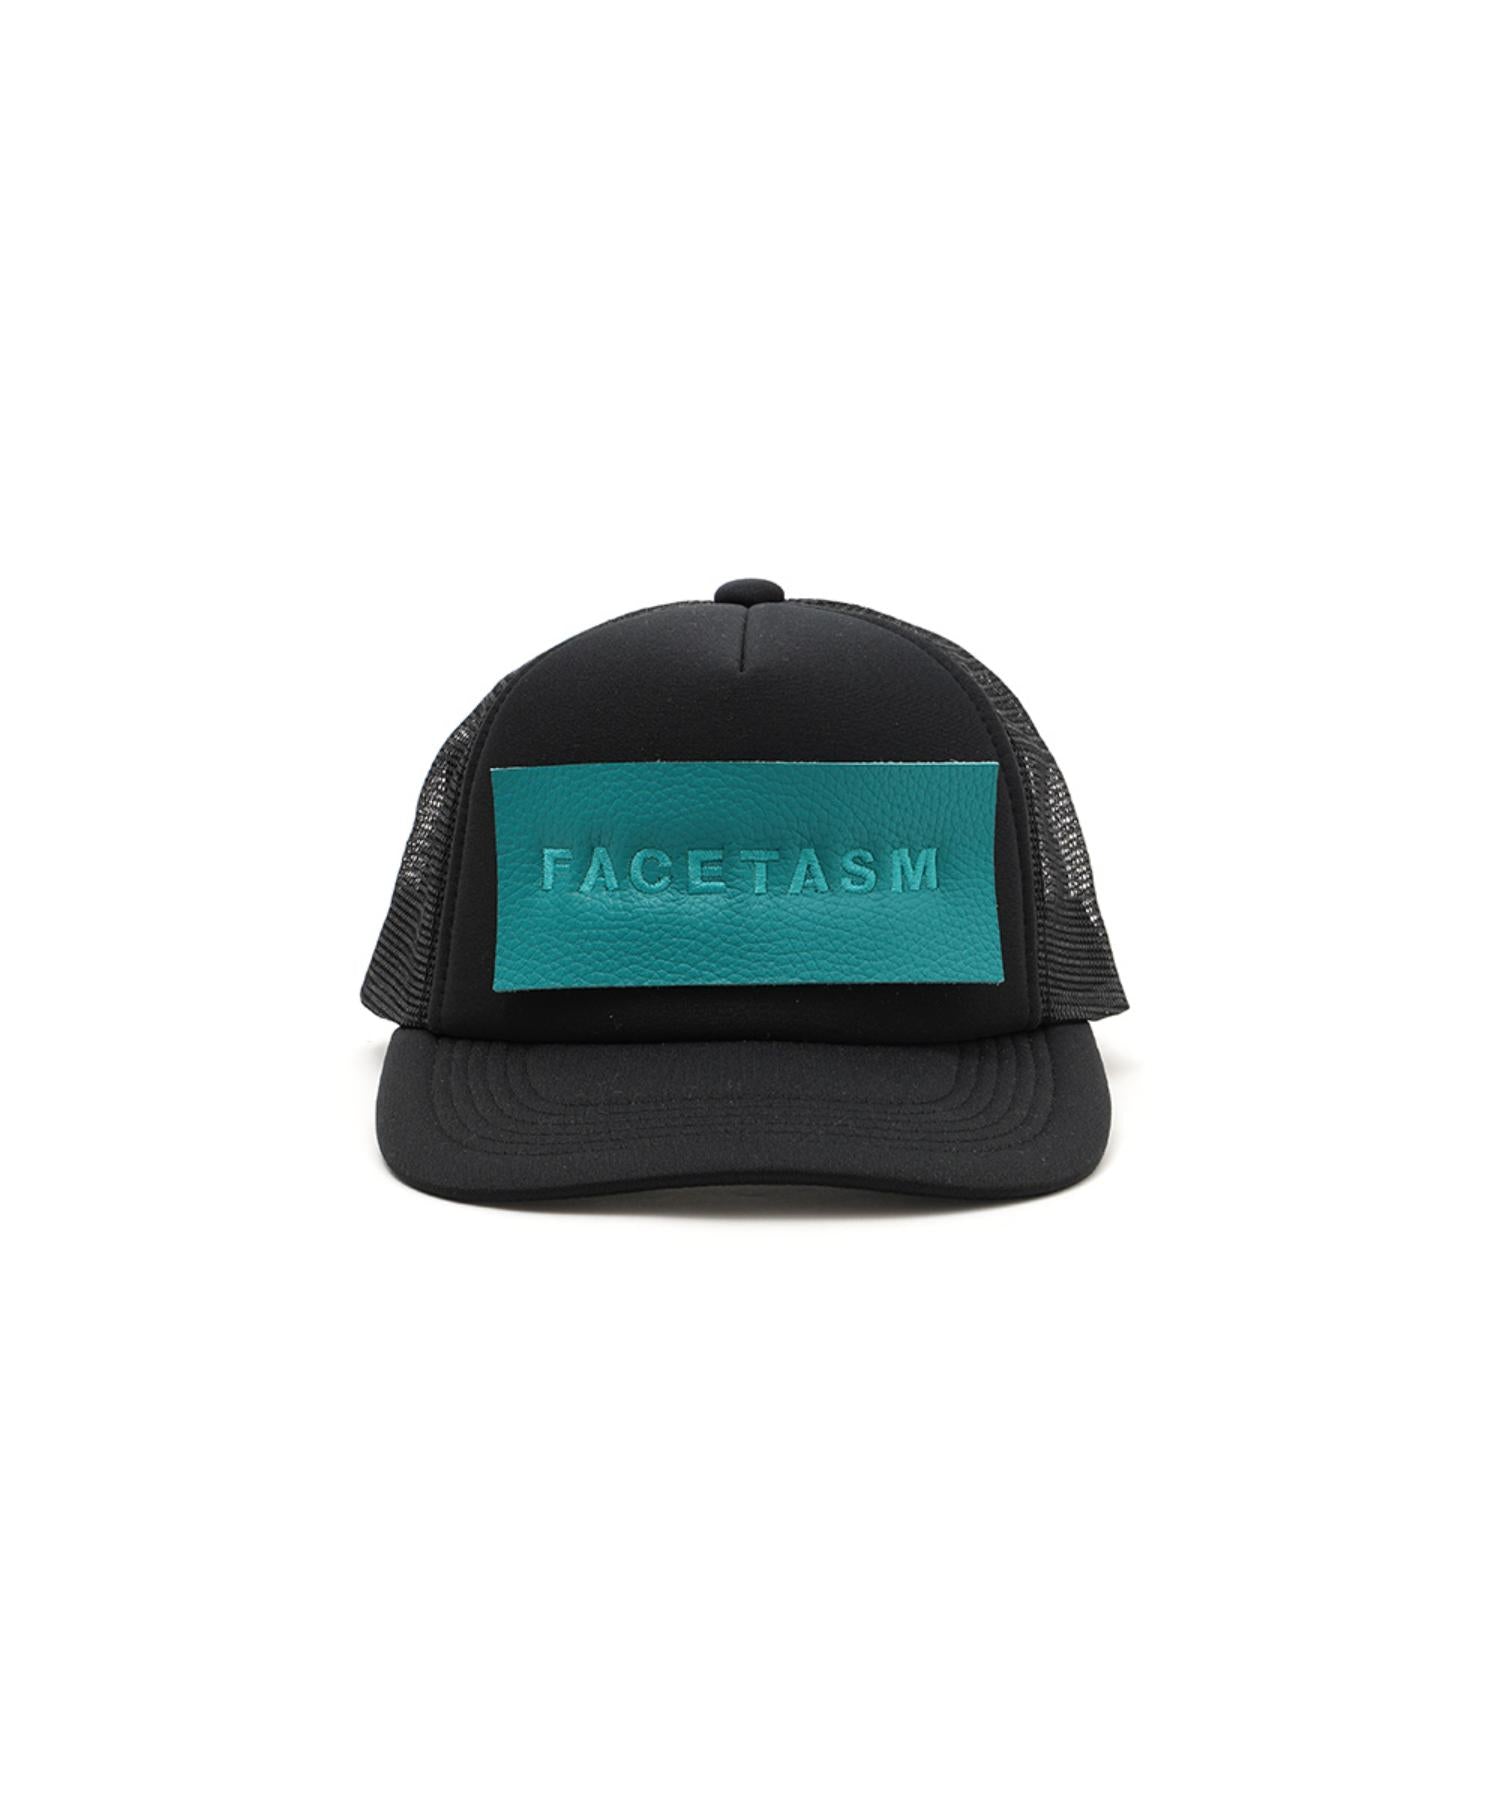 FACETASM×Dogs MESH CAP - FACETASM (ファセッタズム) - cap (キャップ 